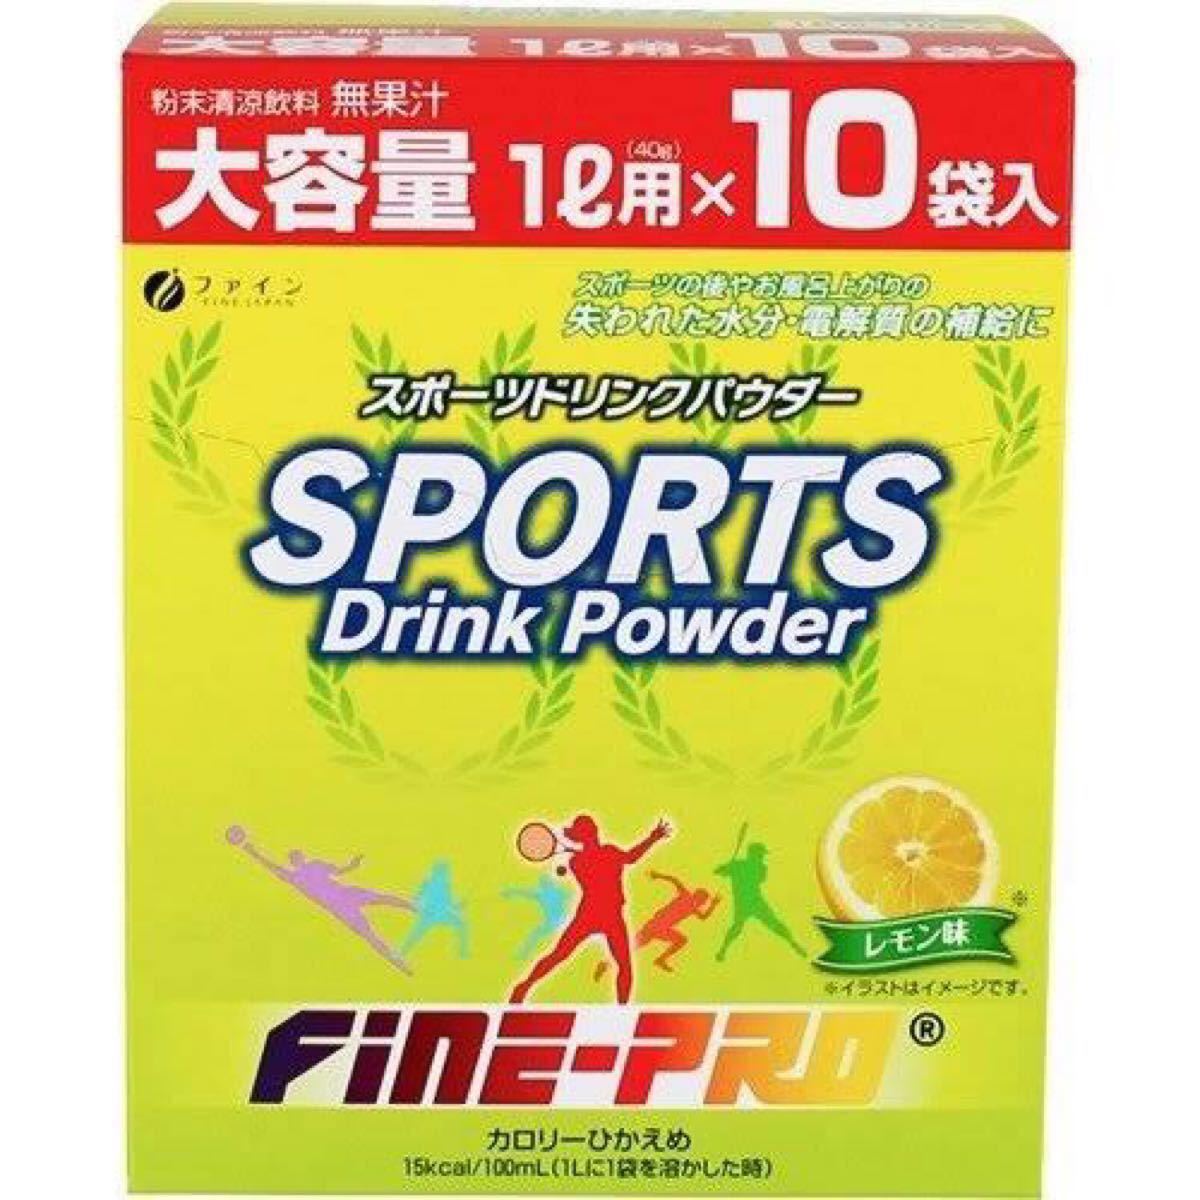 【15箱】ファイン スポーツドリンクパウダー レモン味 15箱セット